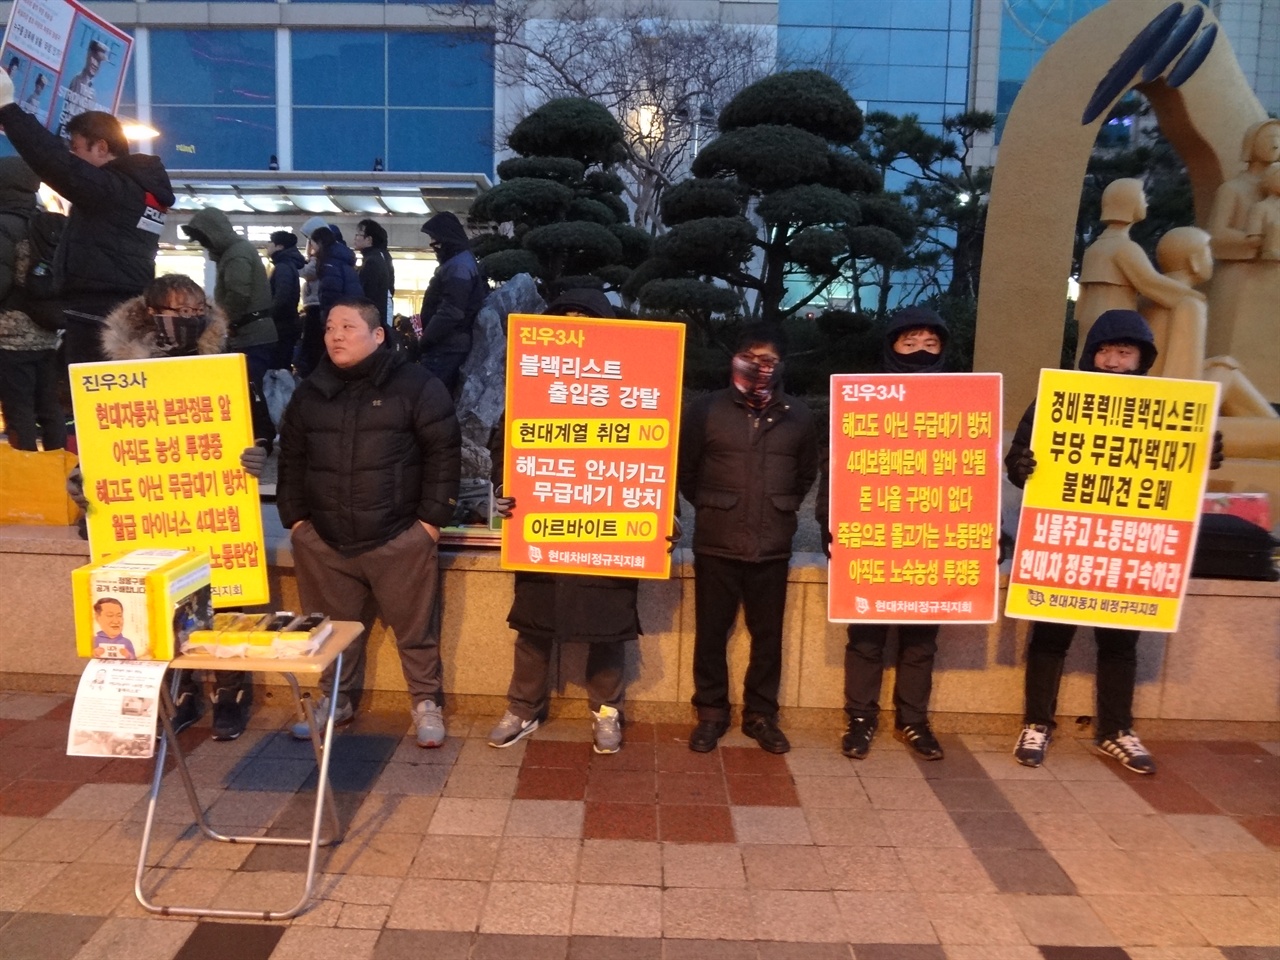 2017년 2월 11일, 울산 남구 롯데백화점에서 노동자들이 피켓을 들고 휴대전화 보조 배터리 판매를 하고 있다. 